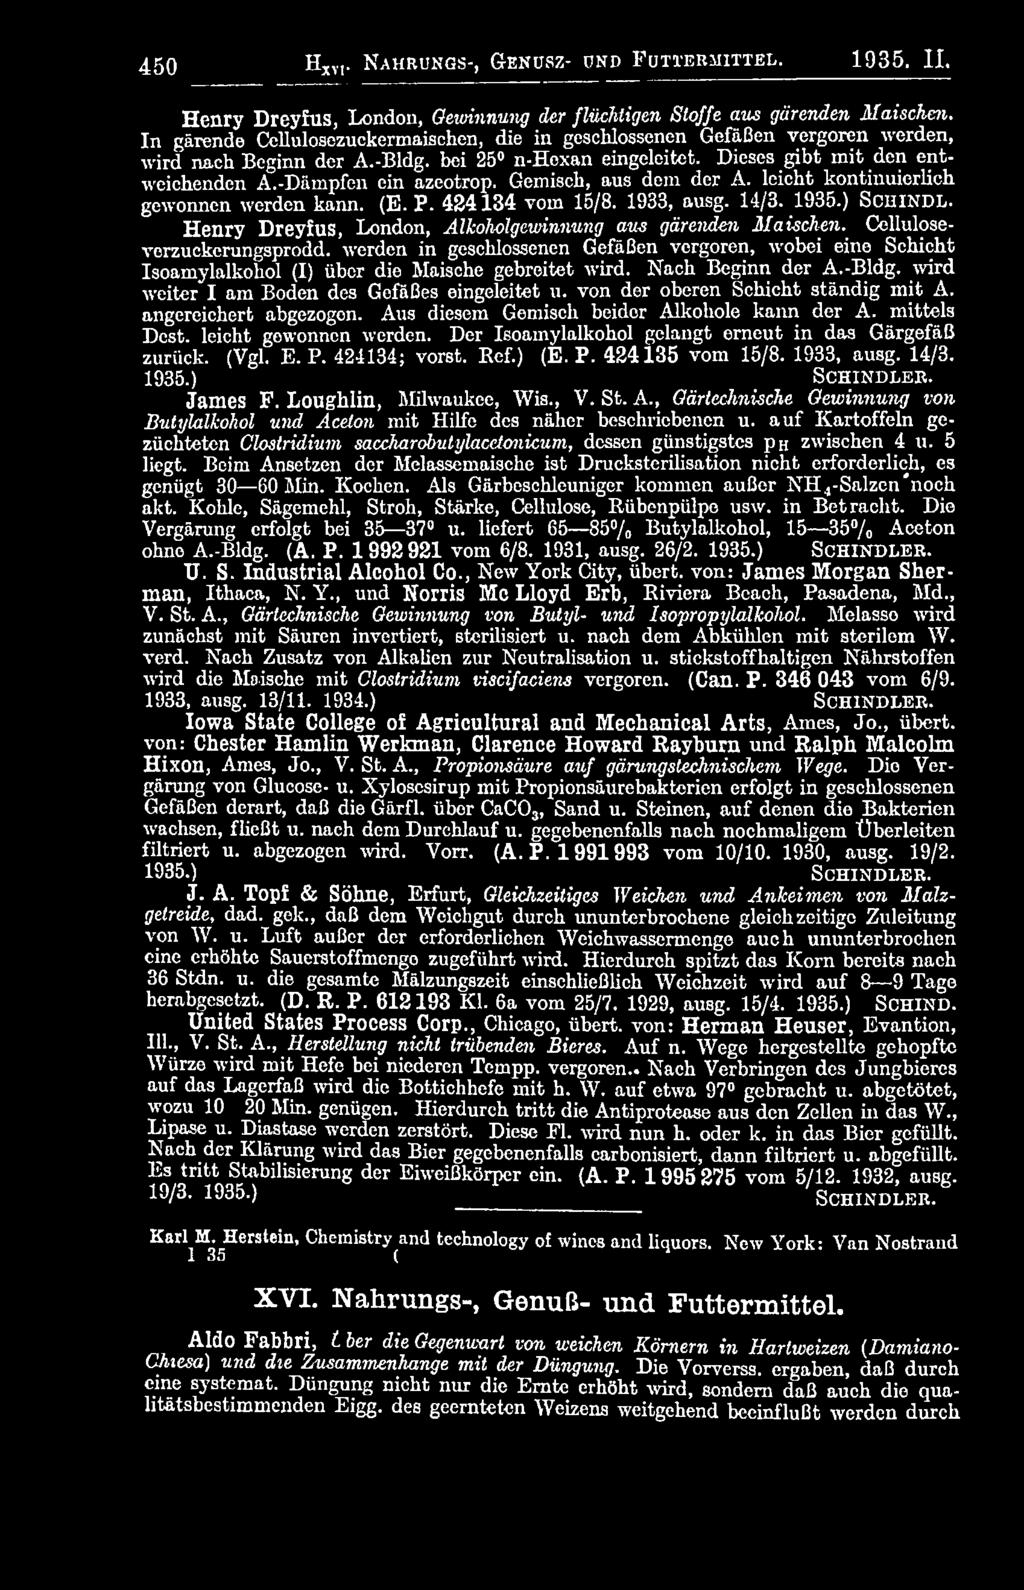 Gemisch, aus dem der A. leicht kontinuierlich gewonnen werden kann. (E. P. 424134 vom 15/8. 1933, ausg. 14/3. 1935.) S c h i n d l. Henry Dreyfus, London, Alkoholgewinnung aus gärenden Maischen.